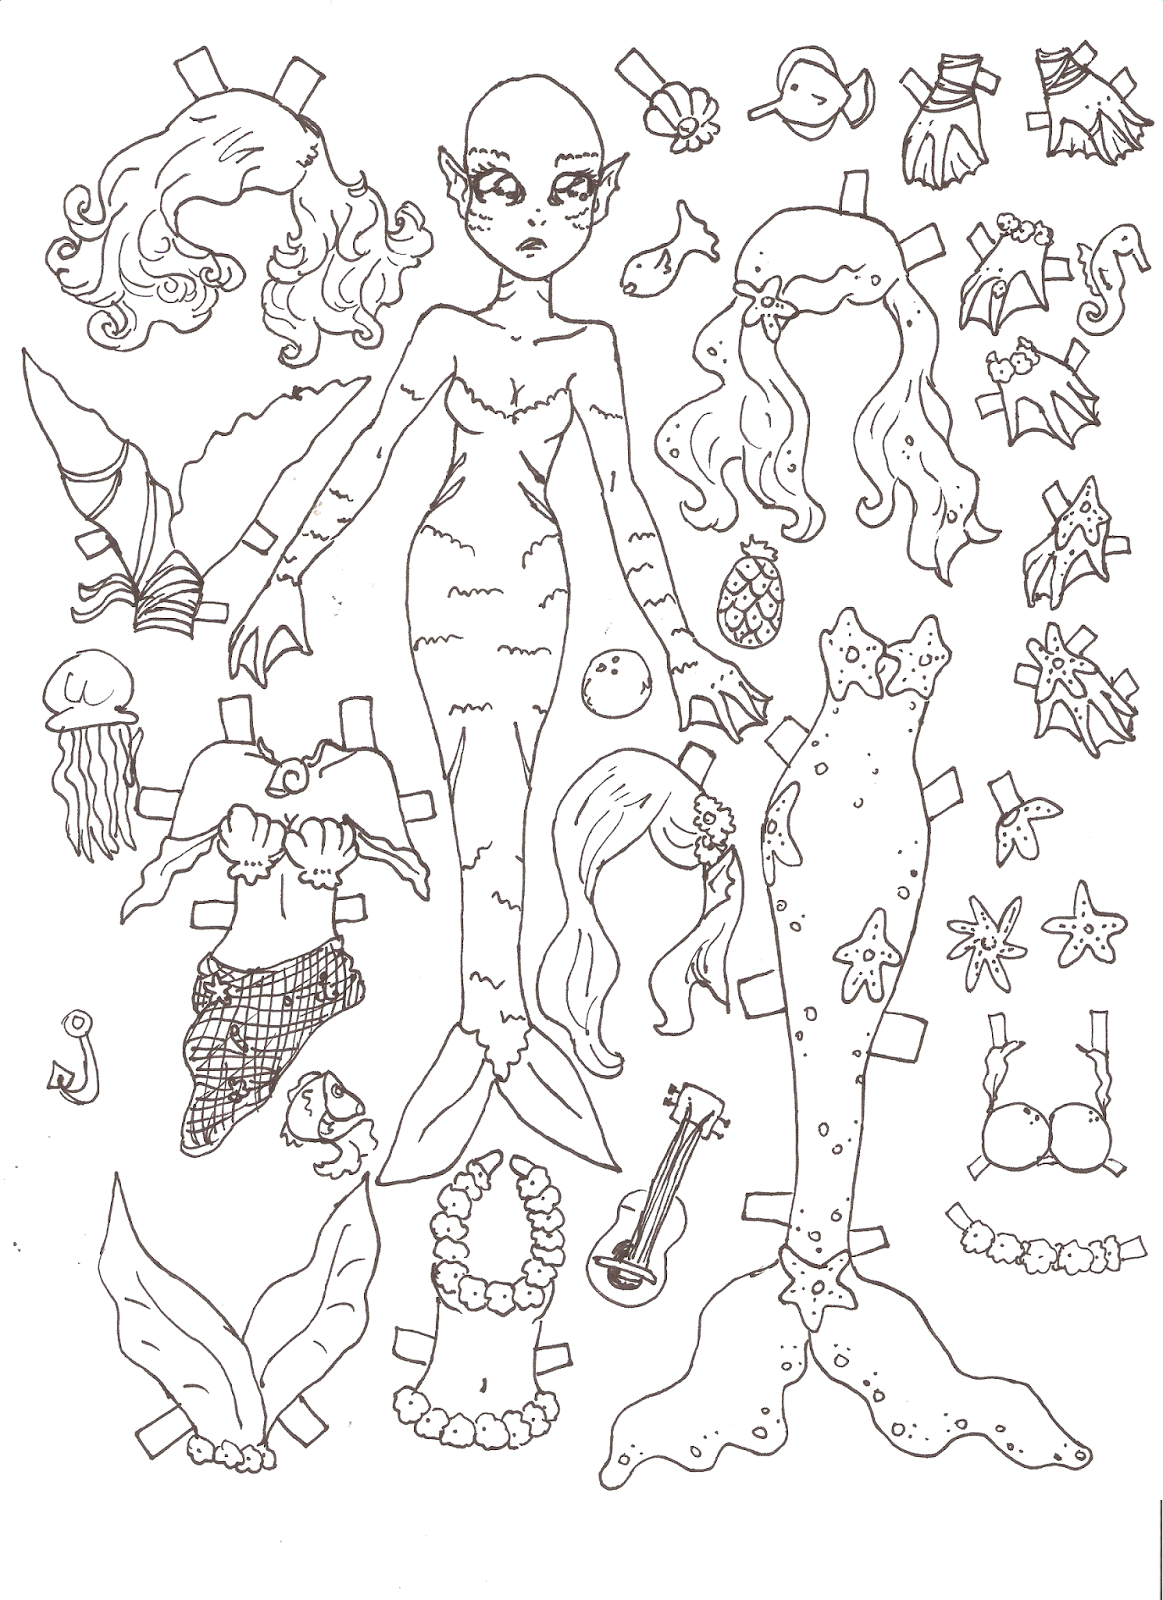 mermaid-001-png-1163-1600-paper-dolls-paper-dolls-printable